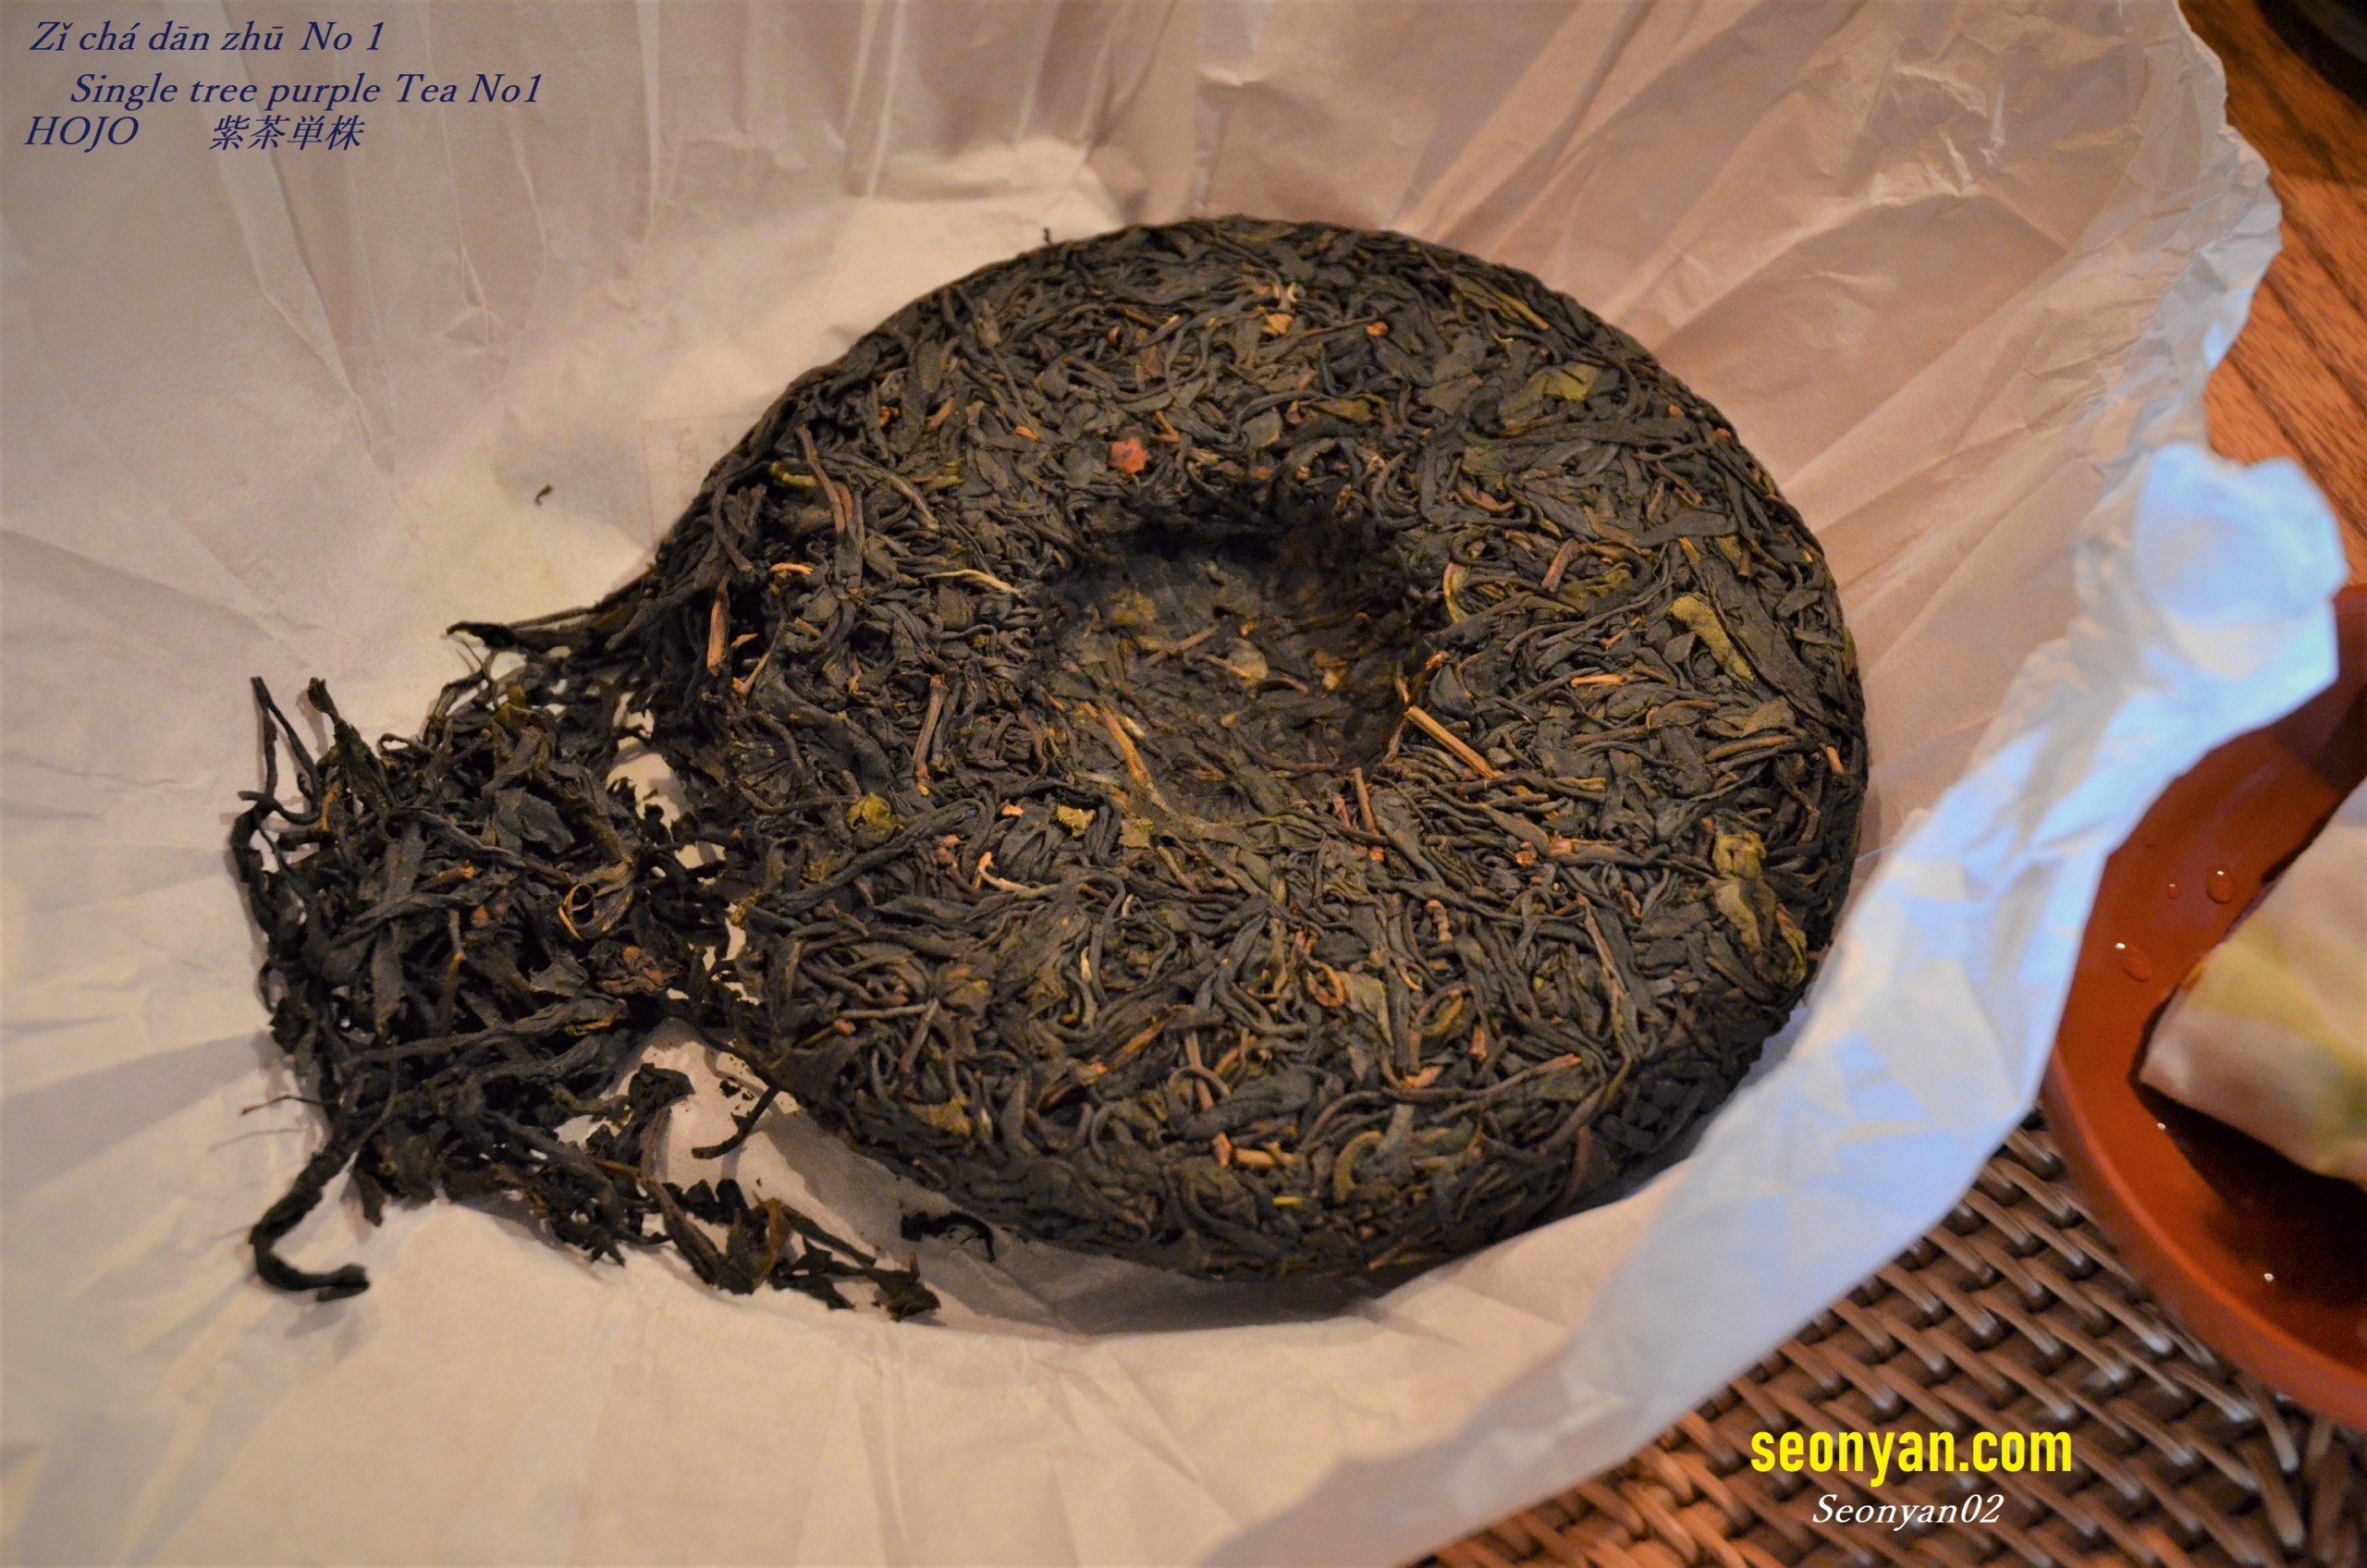 HOJOの紫茶単株餅茶の茶葉画像